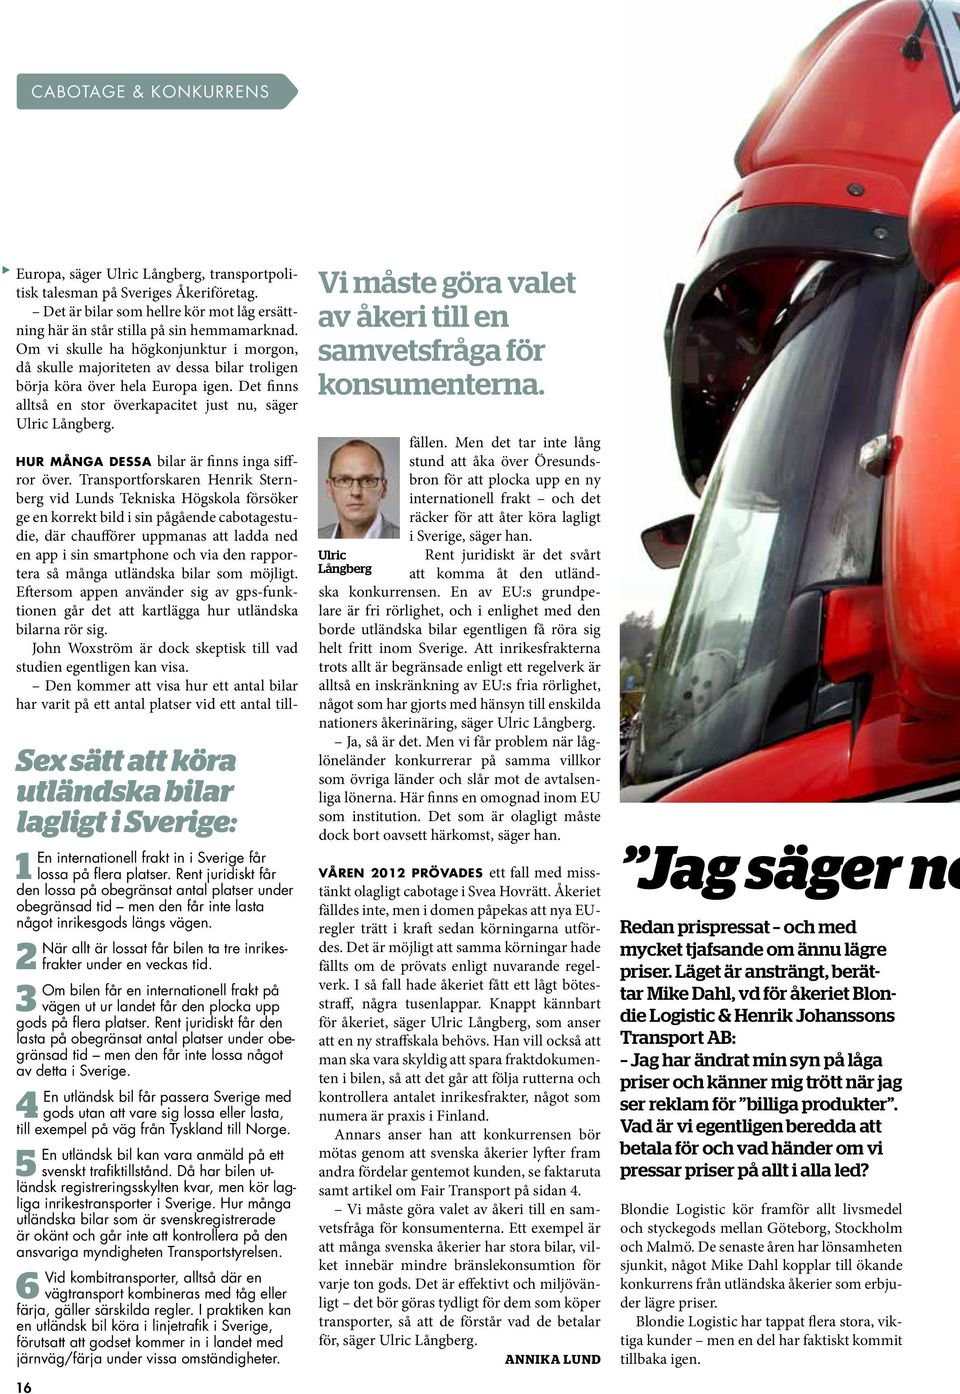 Sex sätt att köra utländska bilar lagligt i Sverige: 1 en internationell frakt in i sverige får lossa på flera platser.